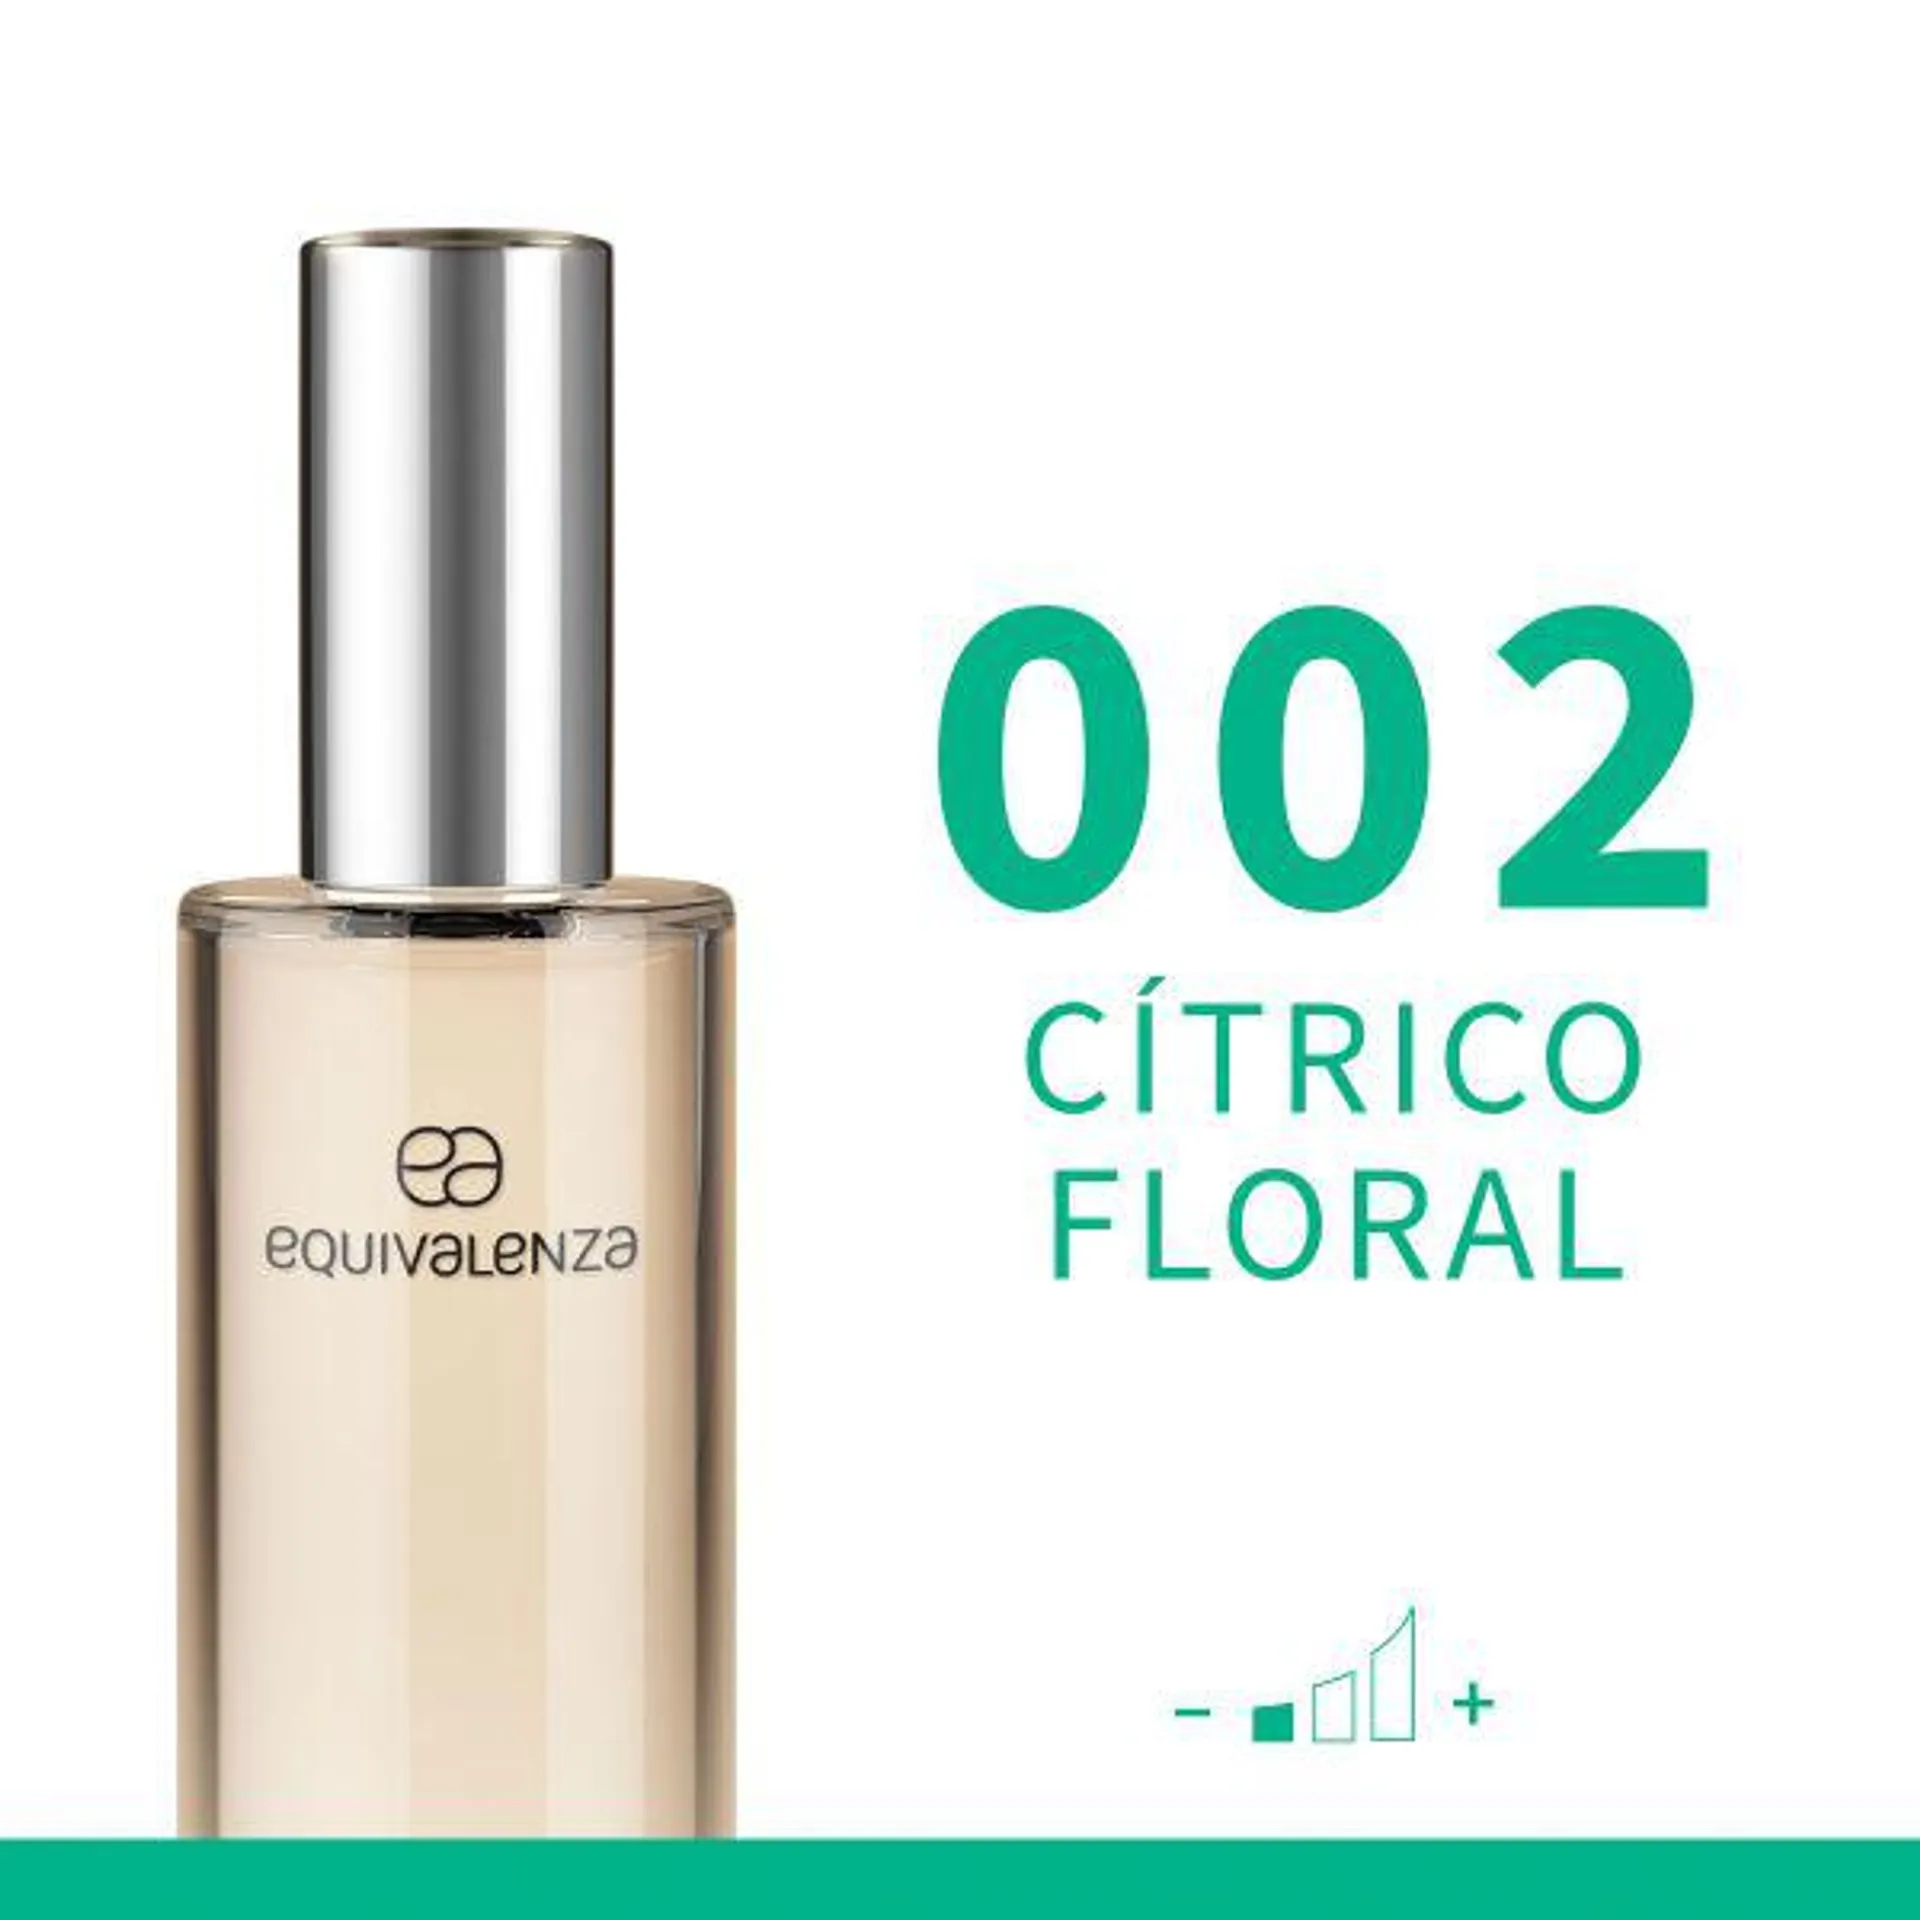 Cítrico floral 002